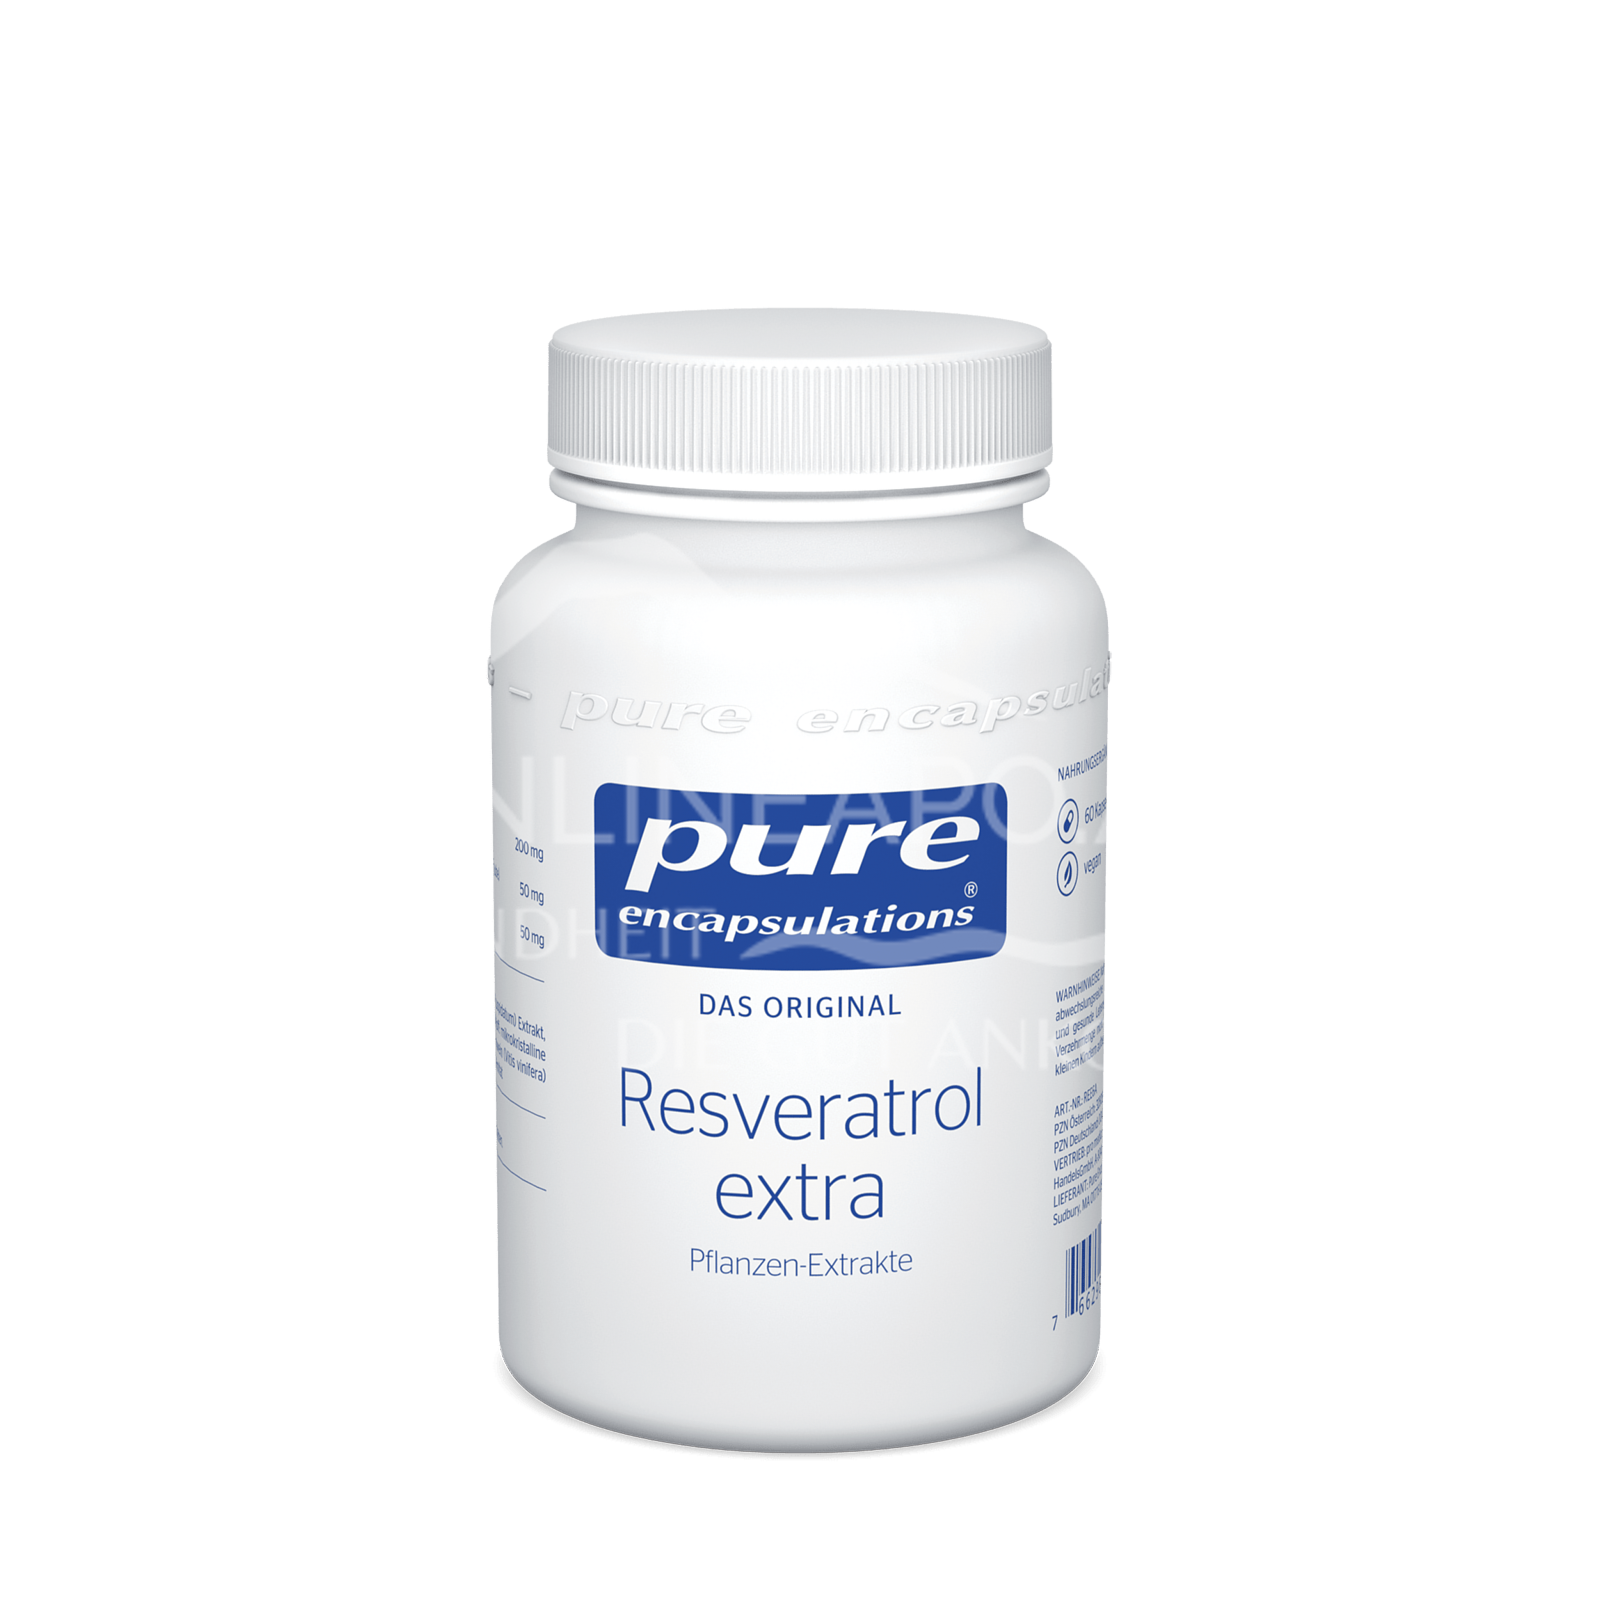 pure encapsulations® Resveratrol extra